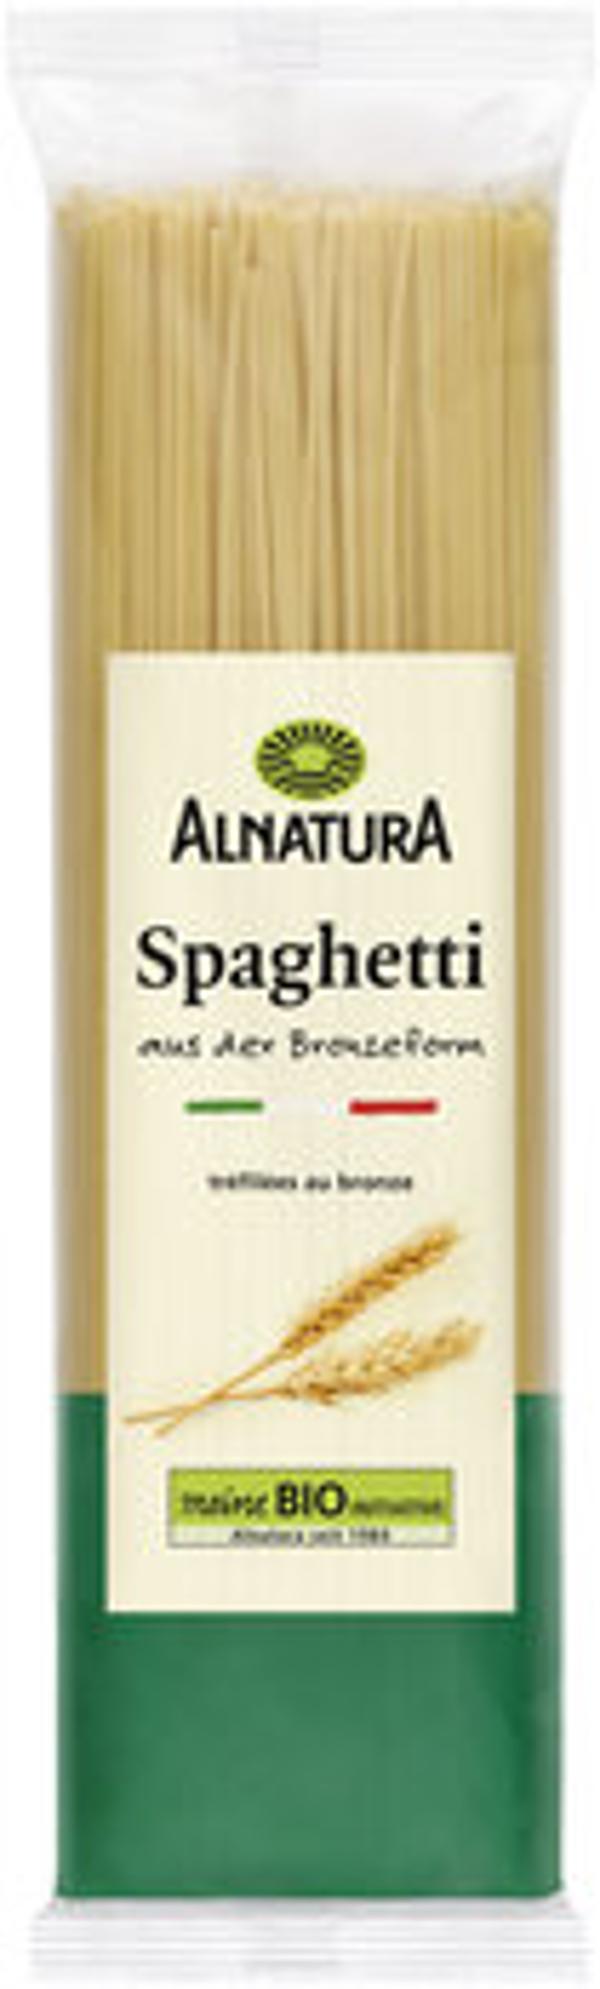 Produktfoto zu Alnatura Spaghetti 500g